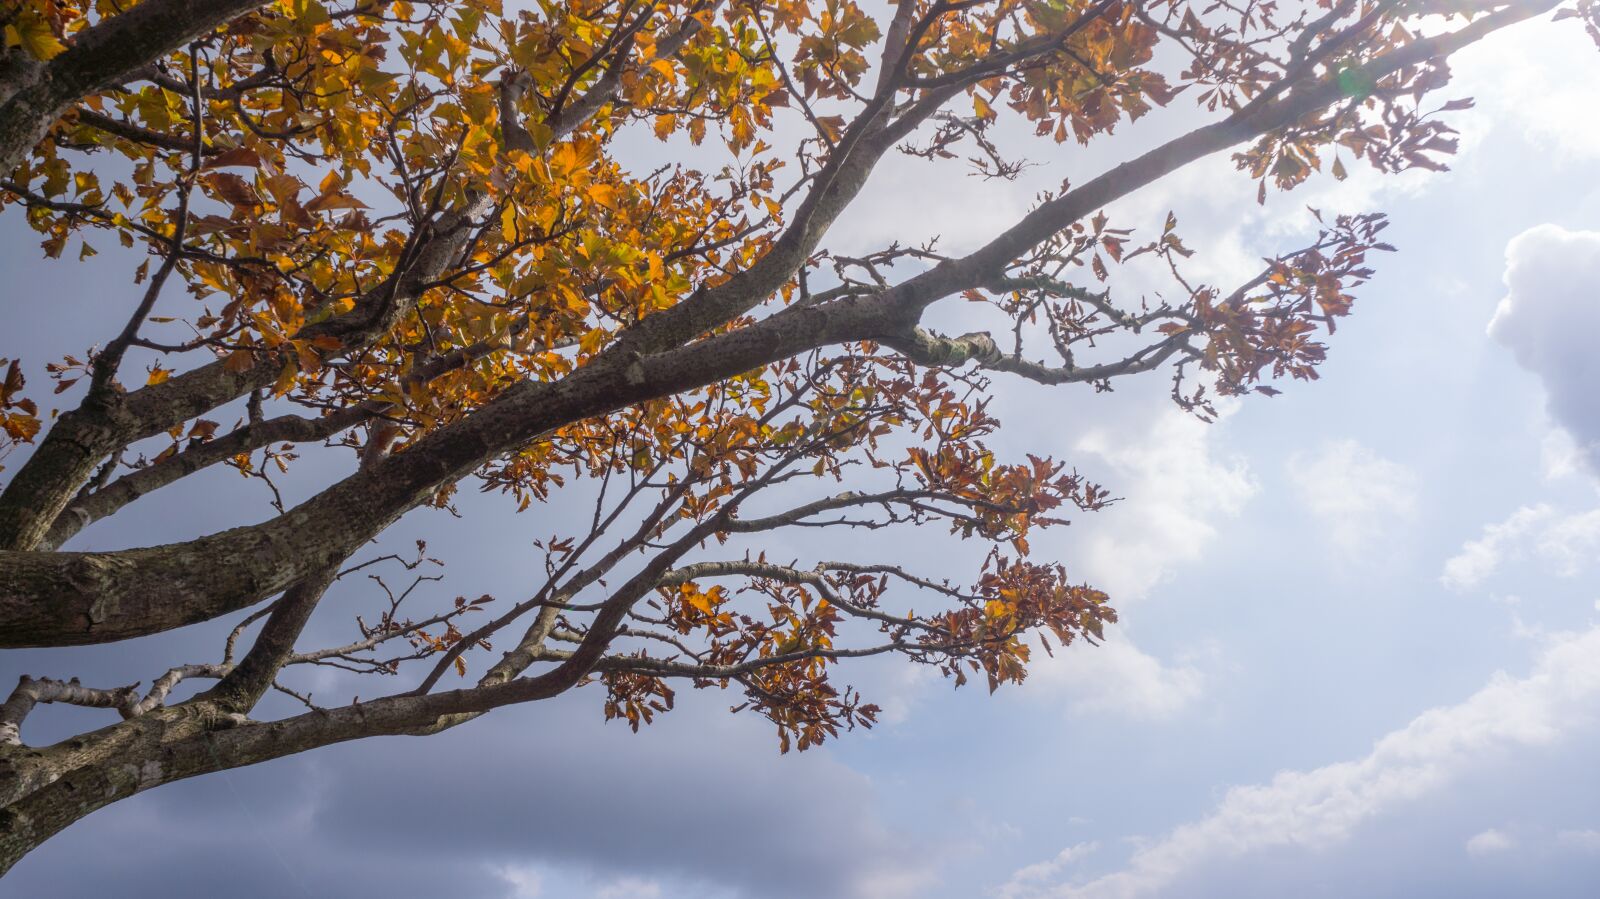 Sony Alpha NEX-5N sample photo. Autumn, autumn leaves, wood photography